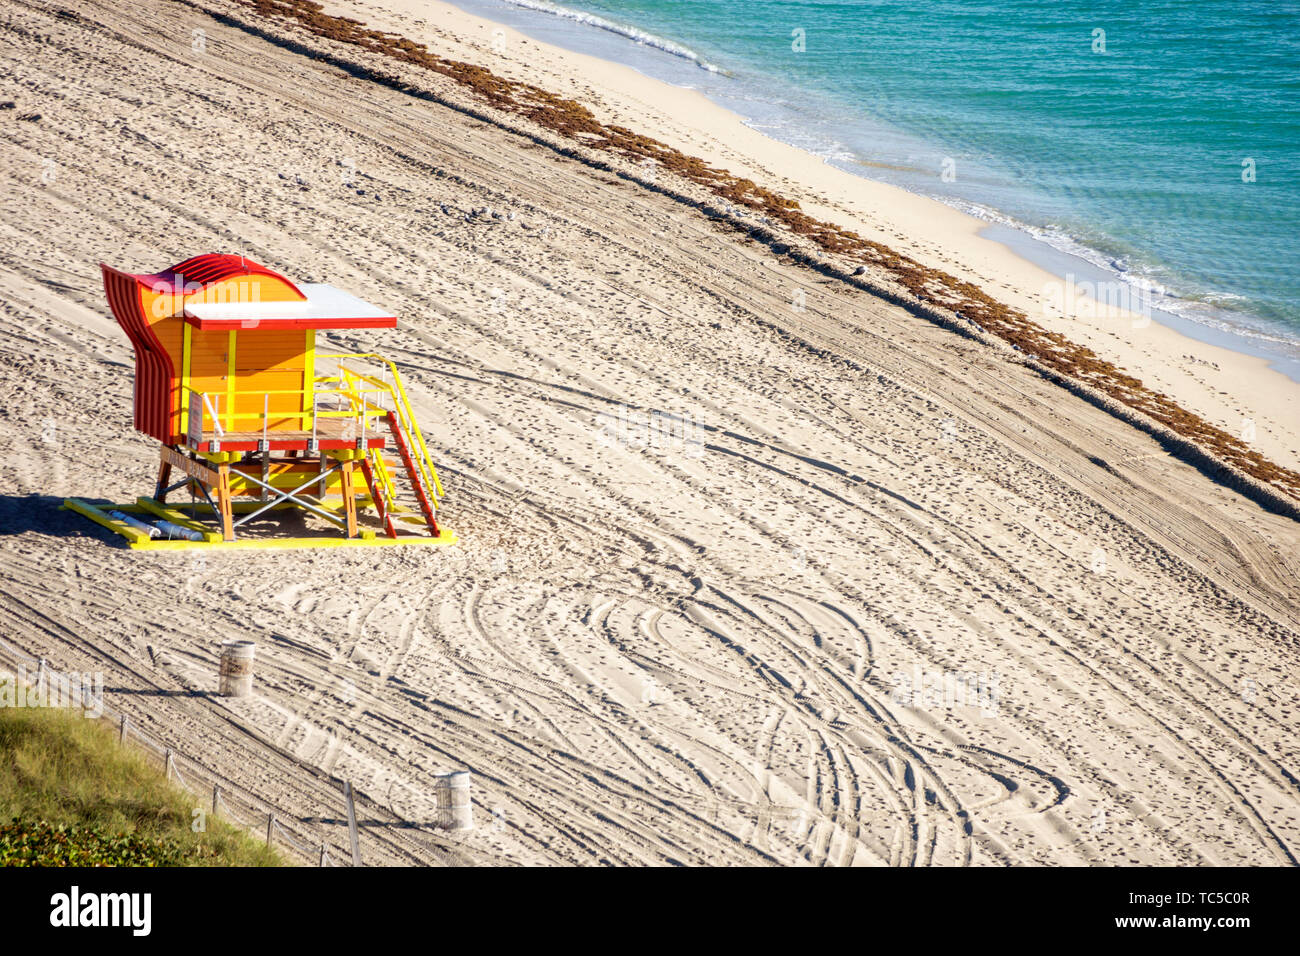 Miami Beach Florida, North Beach, North Shore Open Space Park, spiaggia pubblica di sabbia, stazione di bagnino incustodita, Oceano Atlantico, piste per pneumatici dei veicoli Foto Stock